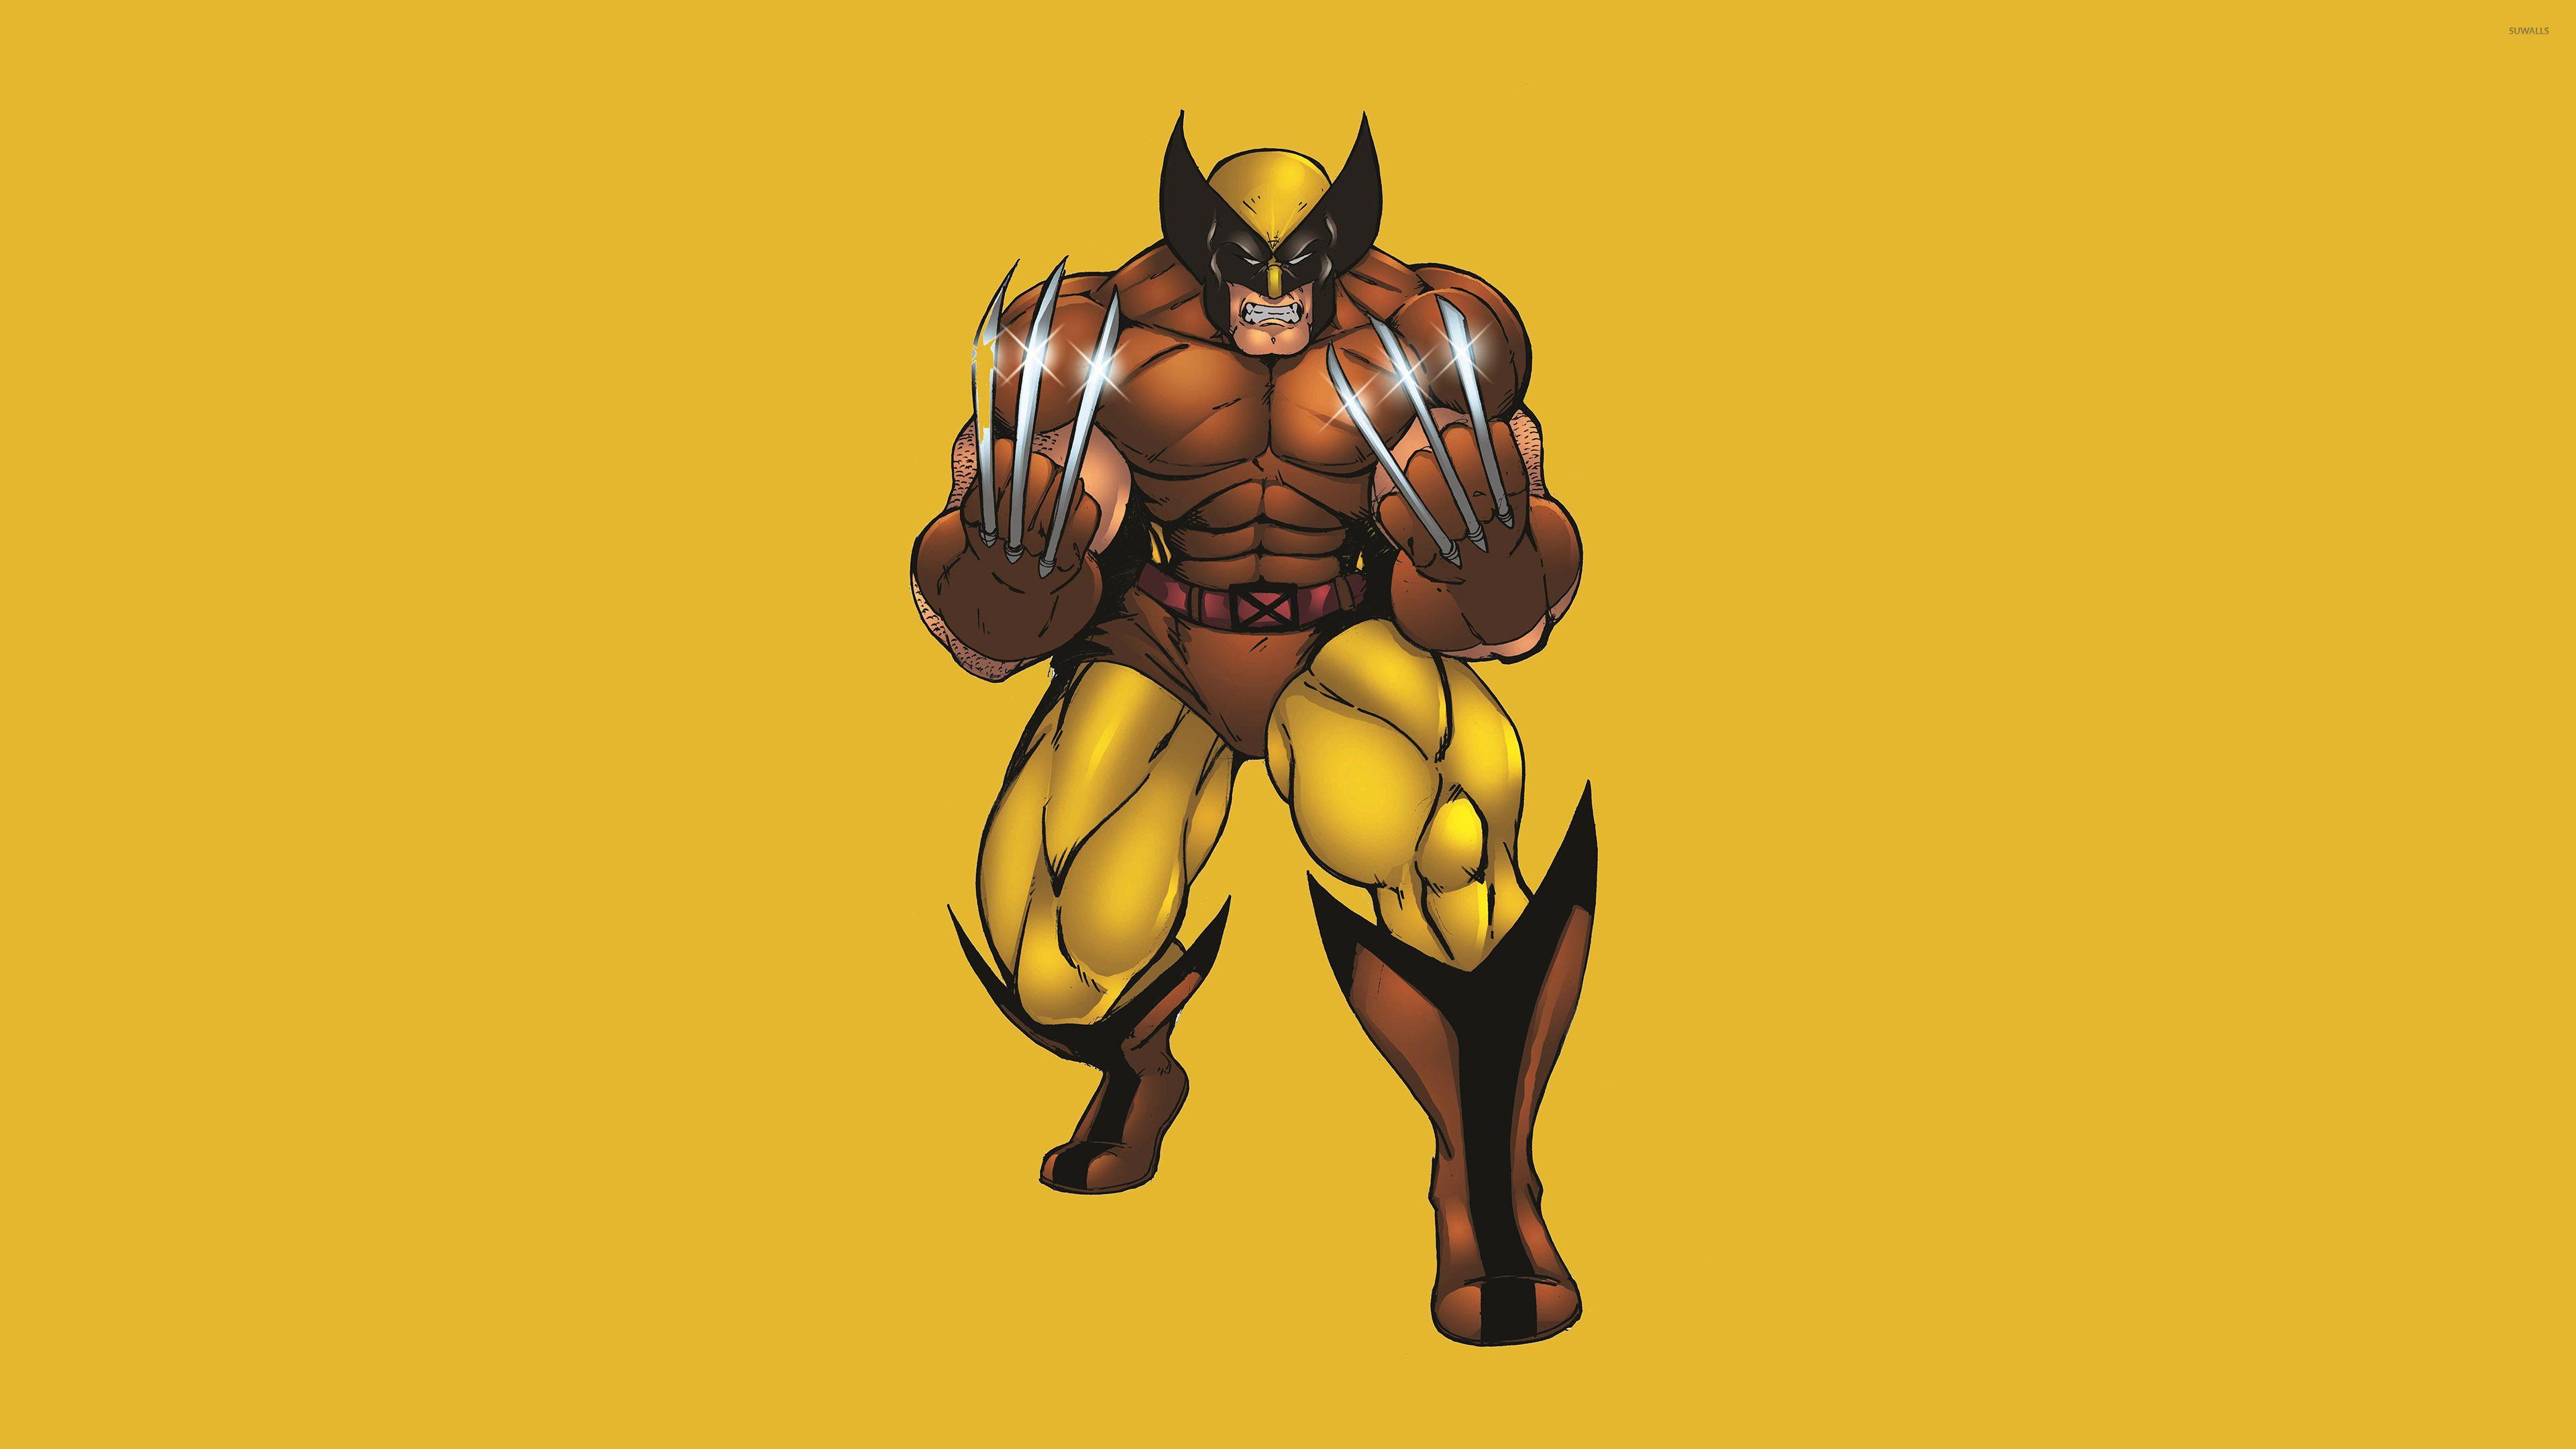 Hình nền 3840x2160 Wolverine với móng vuốt bạc - Hình nền truyện tranh